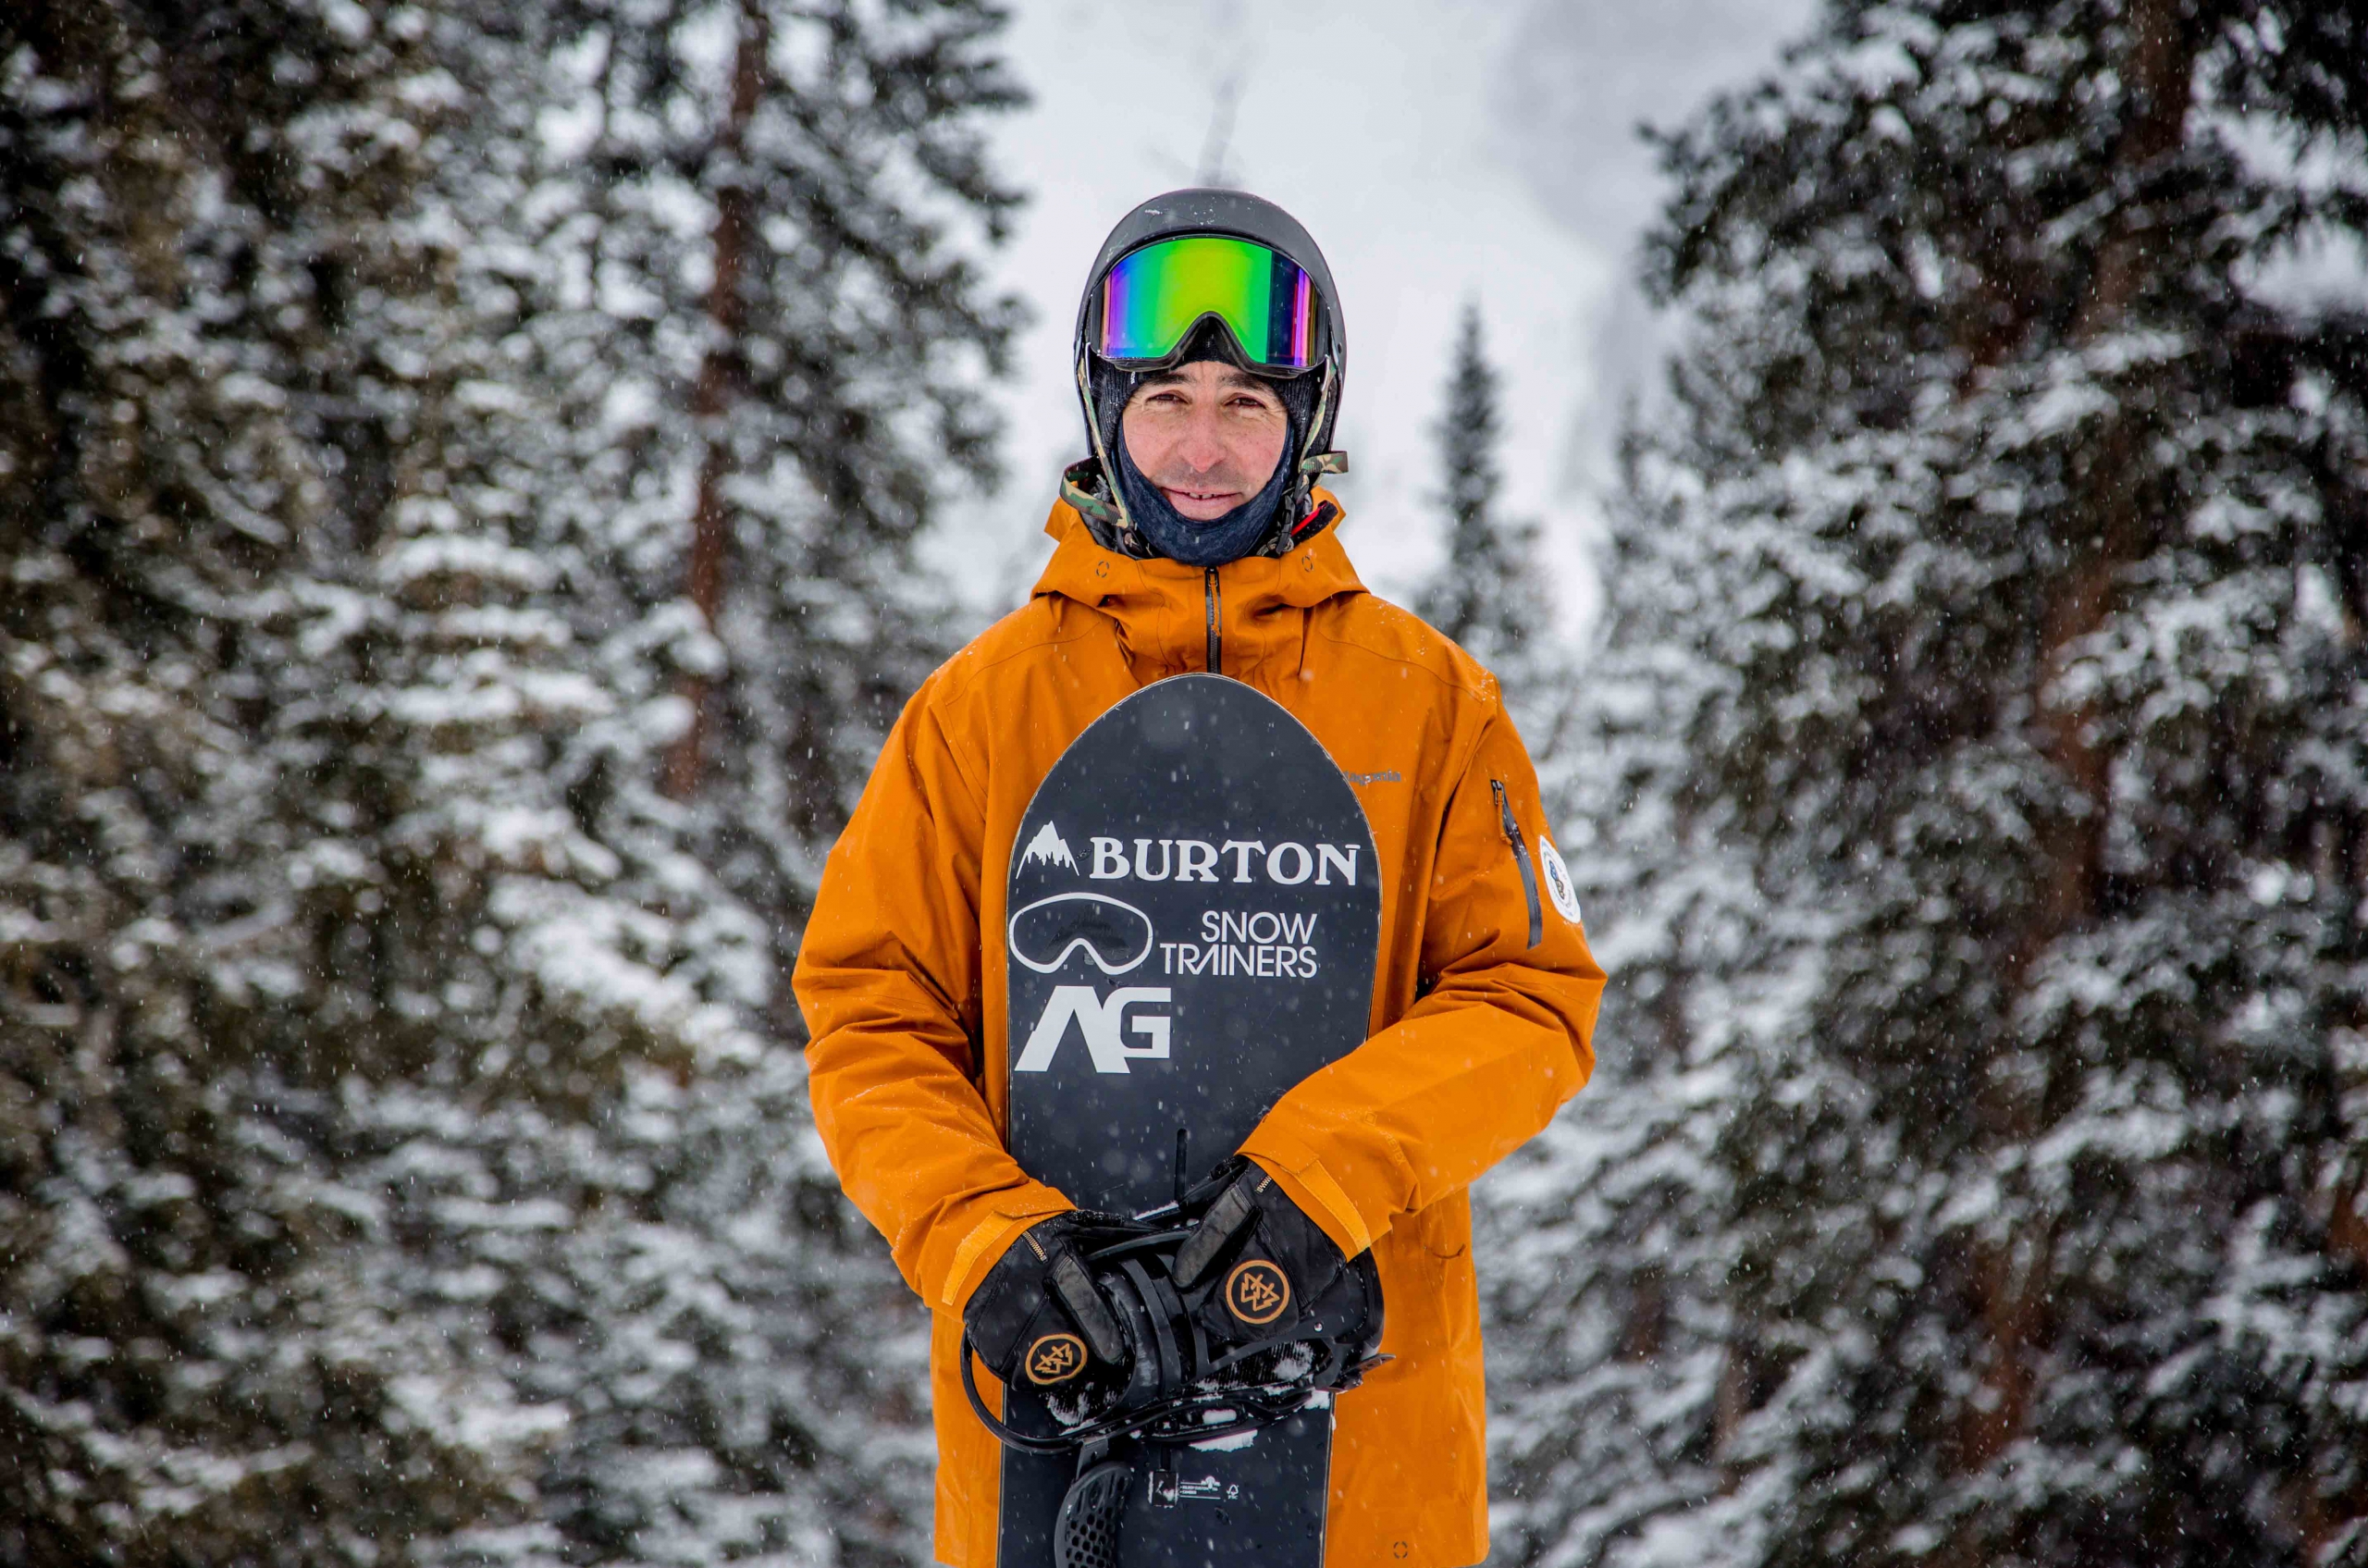 AASI Snowboard Team member Tony Macri